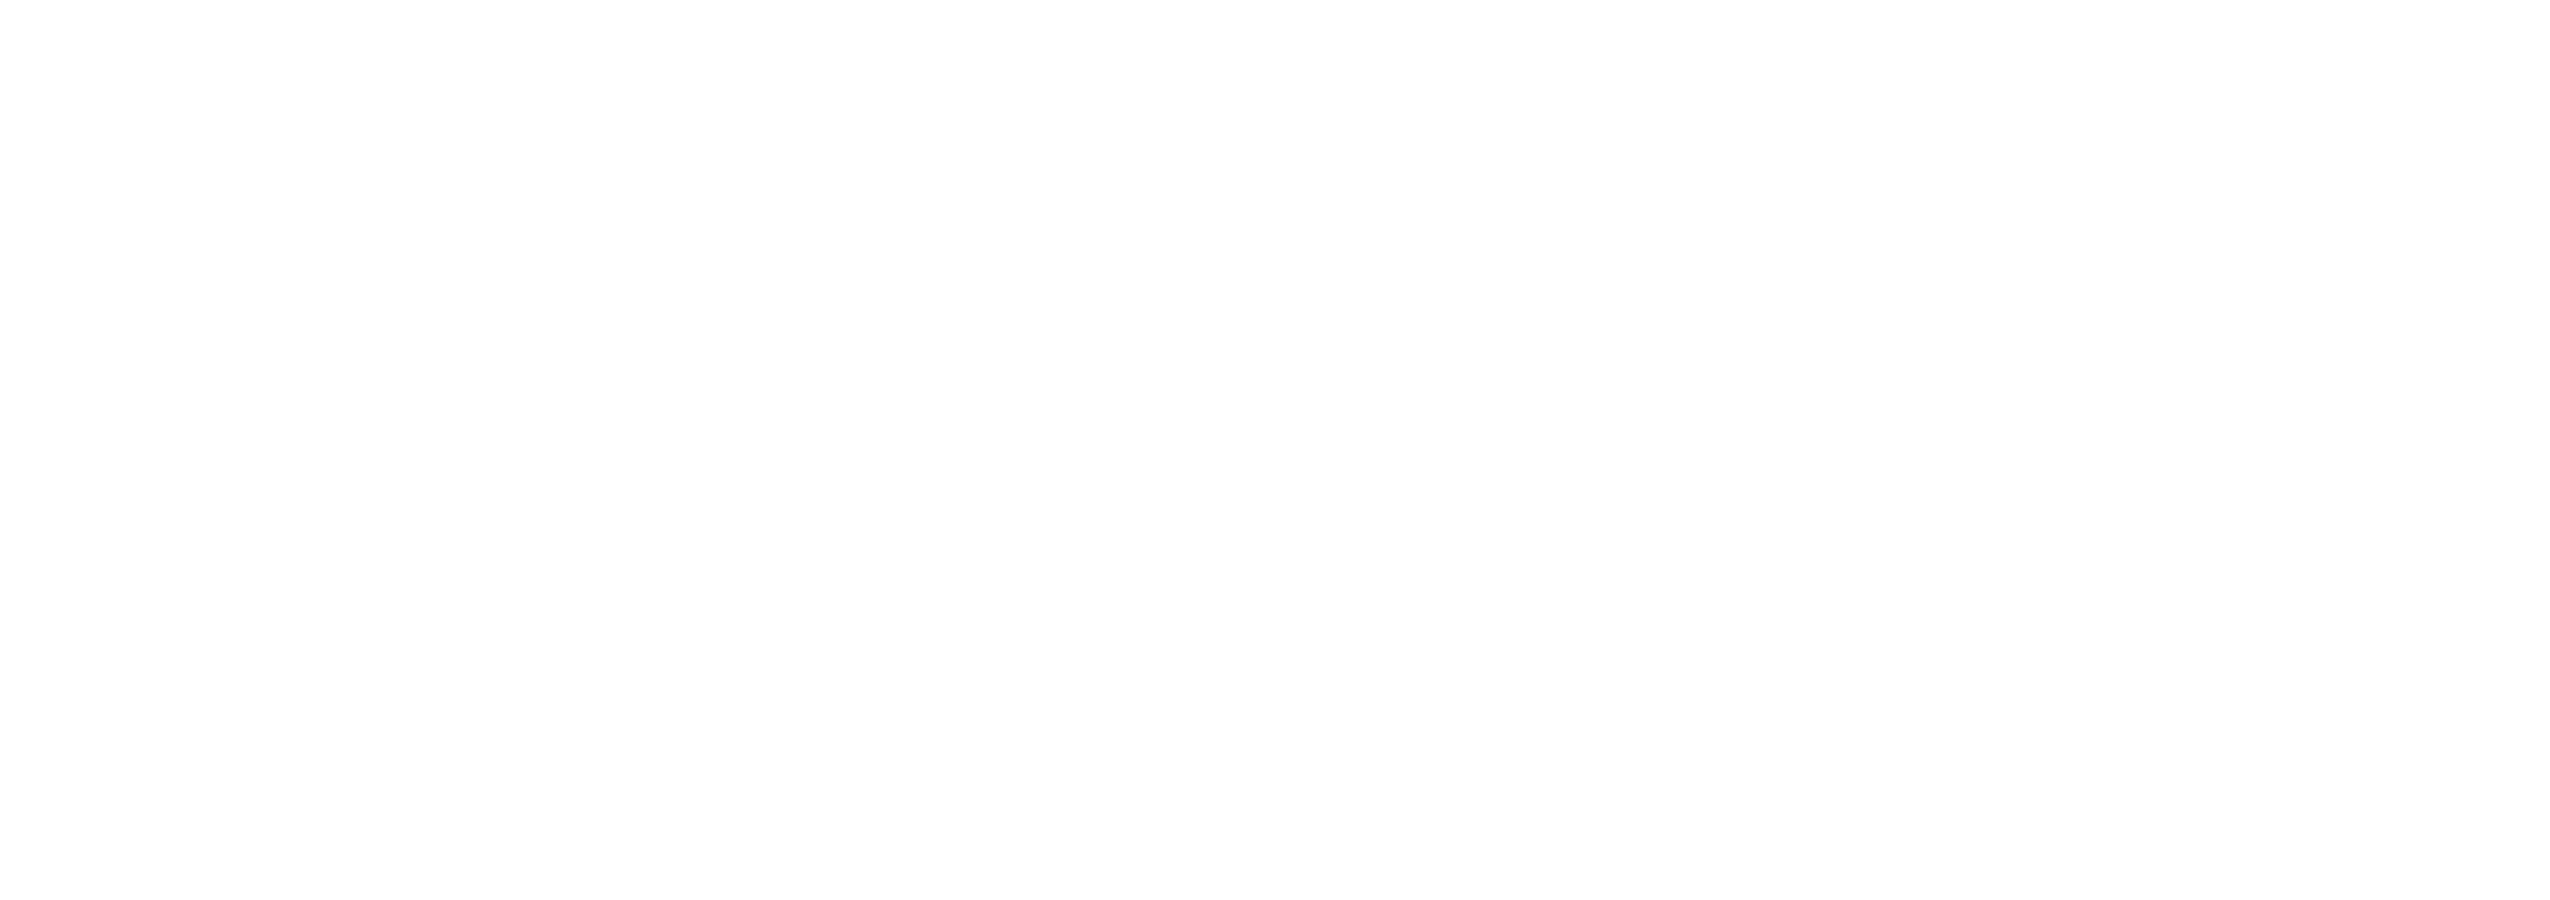 Return to TMA Alliance Homepage